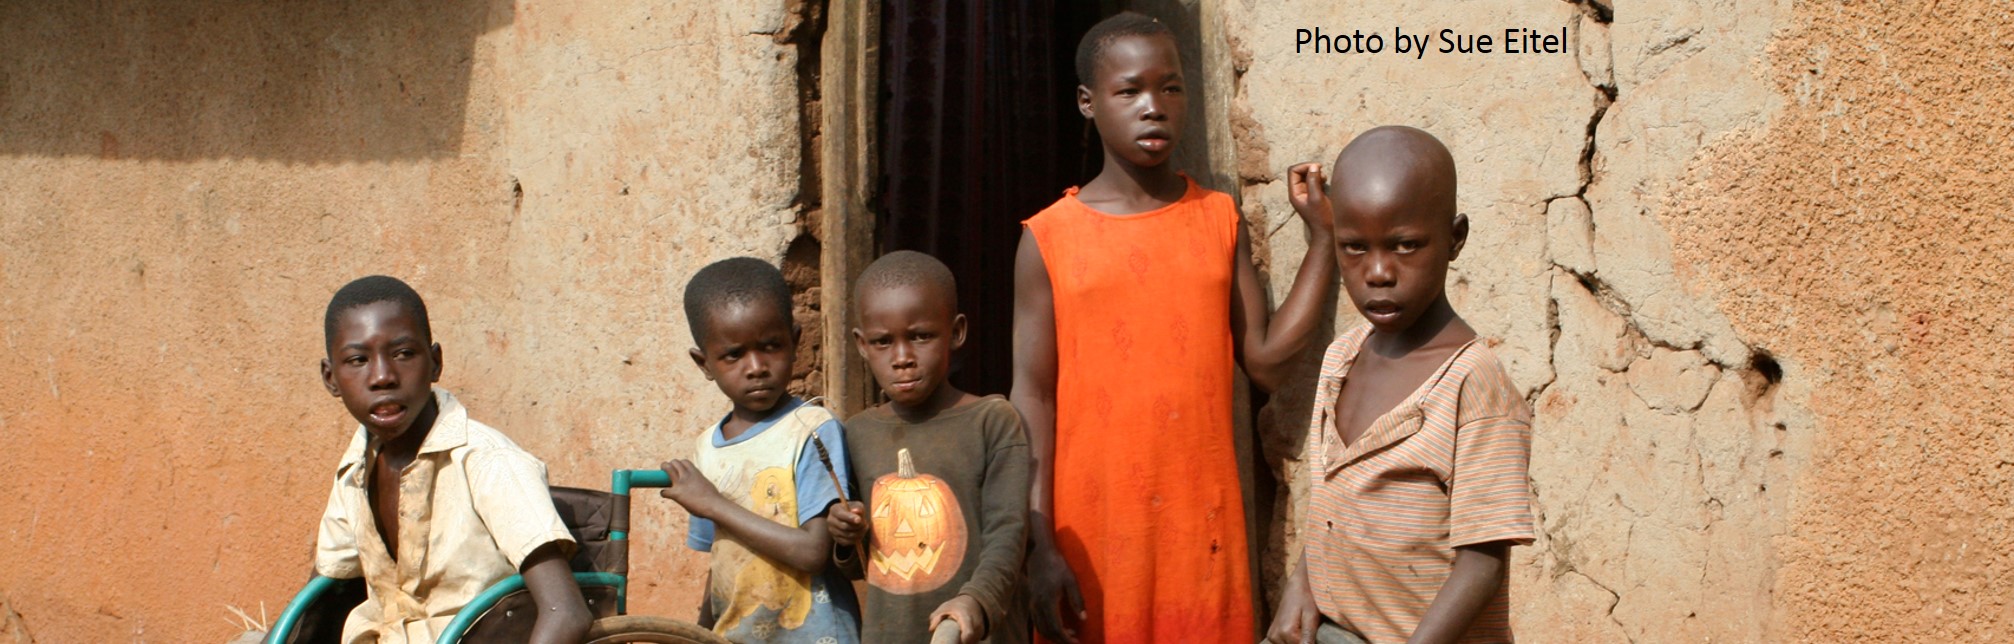 Children in an African village. Photo by Sue Eitel.